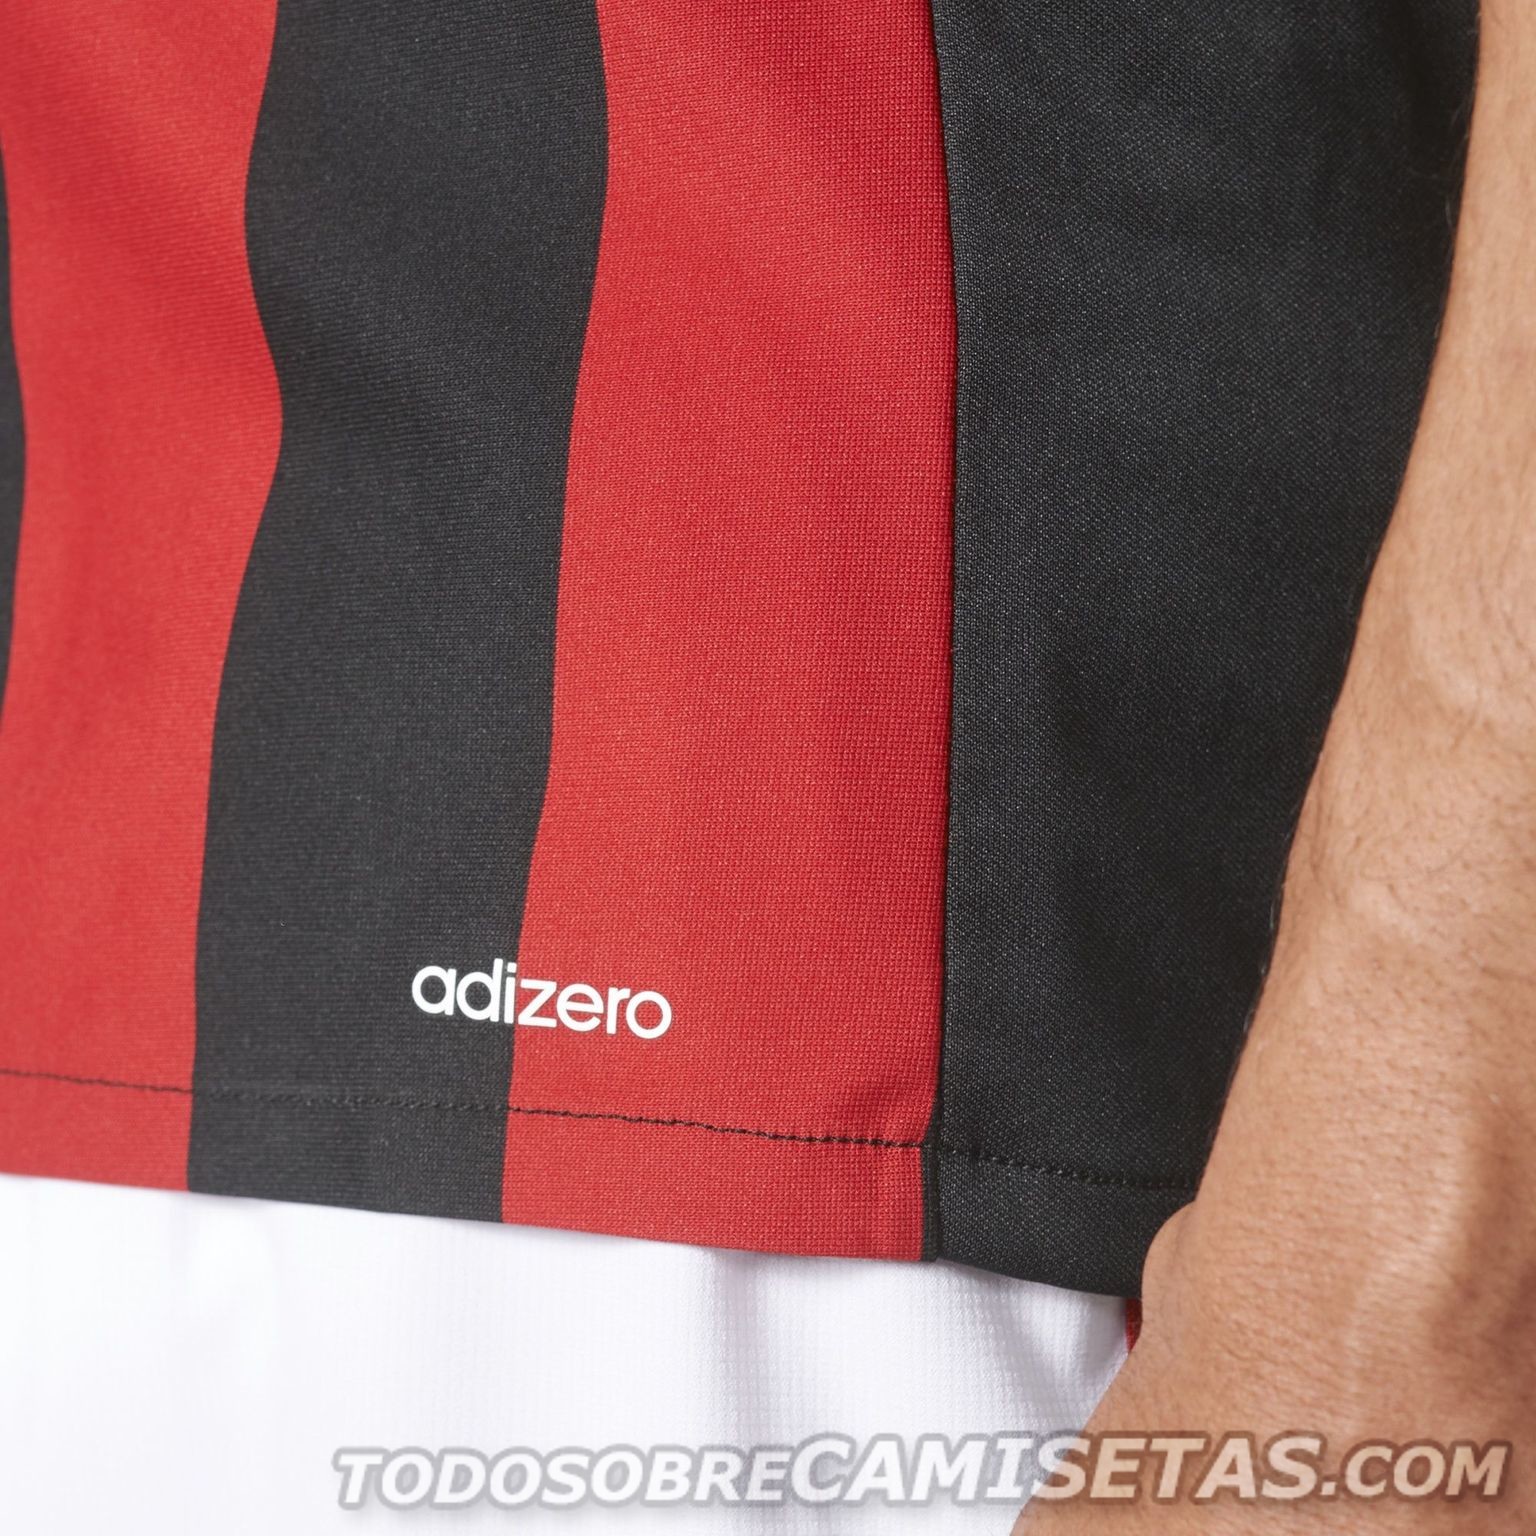 AC Milan 2017-18 adidas Home Kit